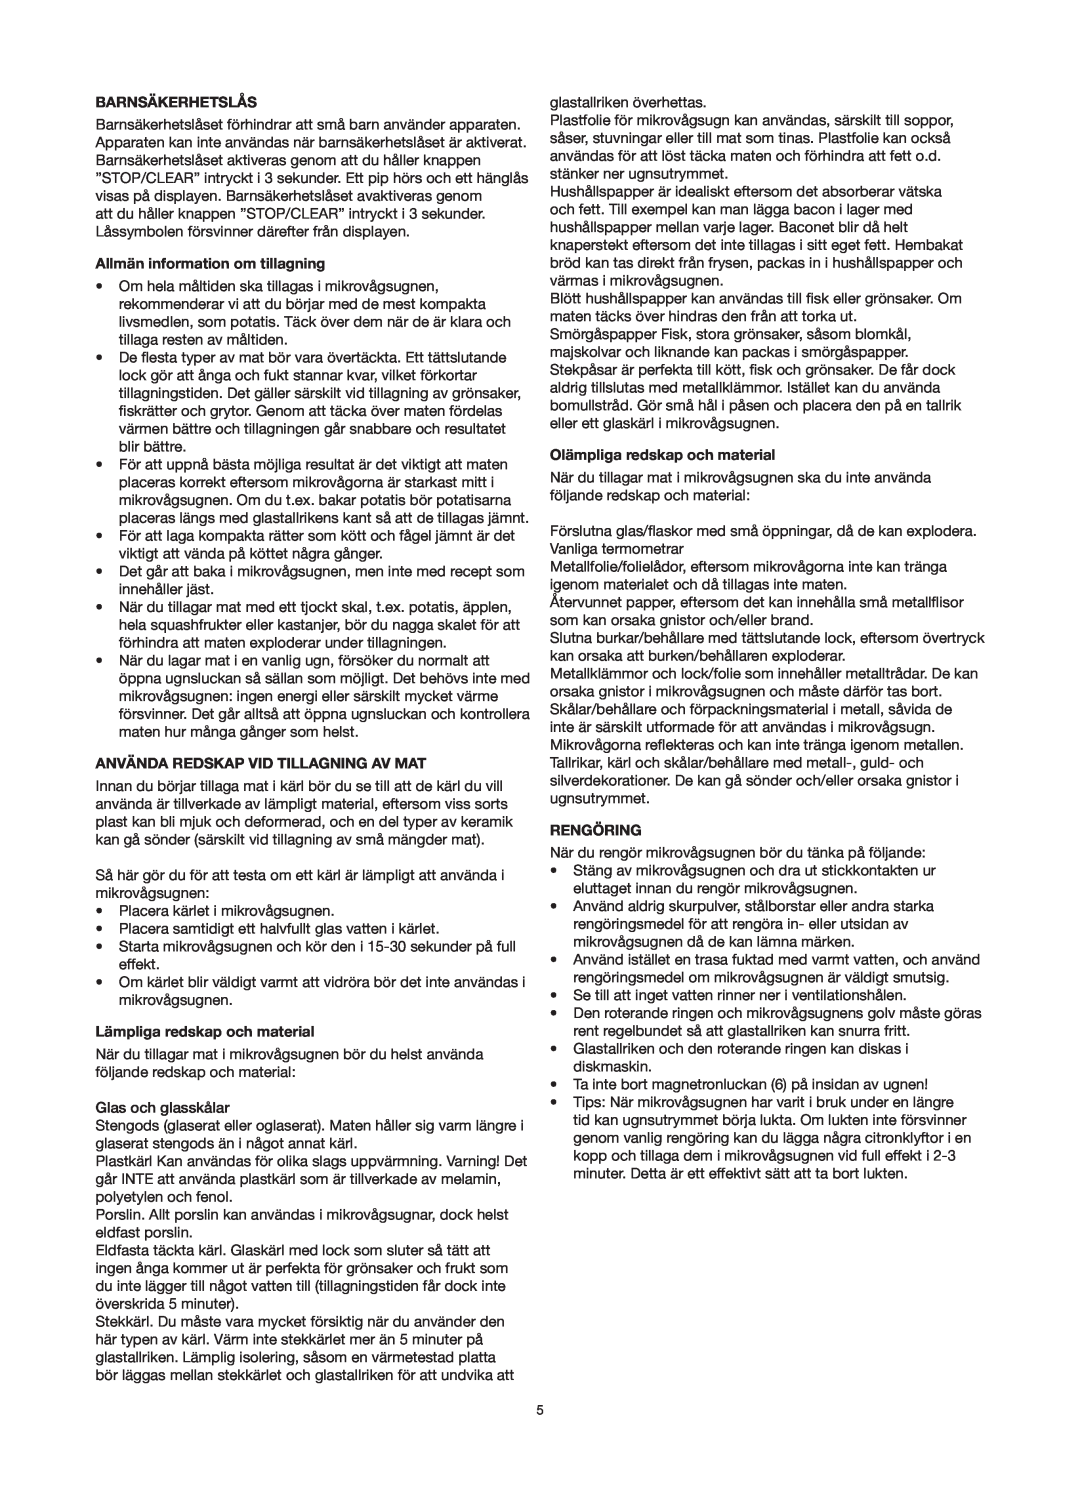 Melissa 753-125 manual Barnsäkerhetslås, Allmän information om tillagning, Använda Redskap Vid Tillagning Av Mat, Rengöring 